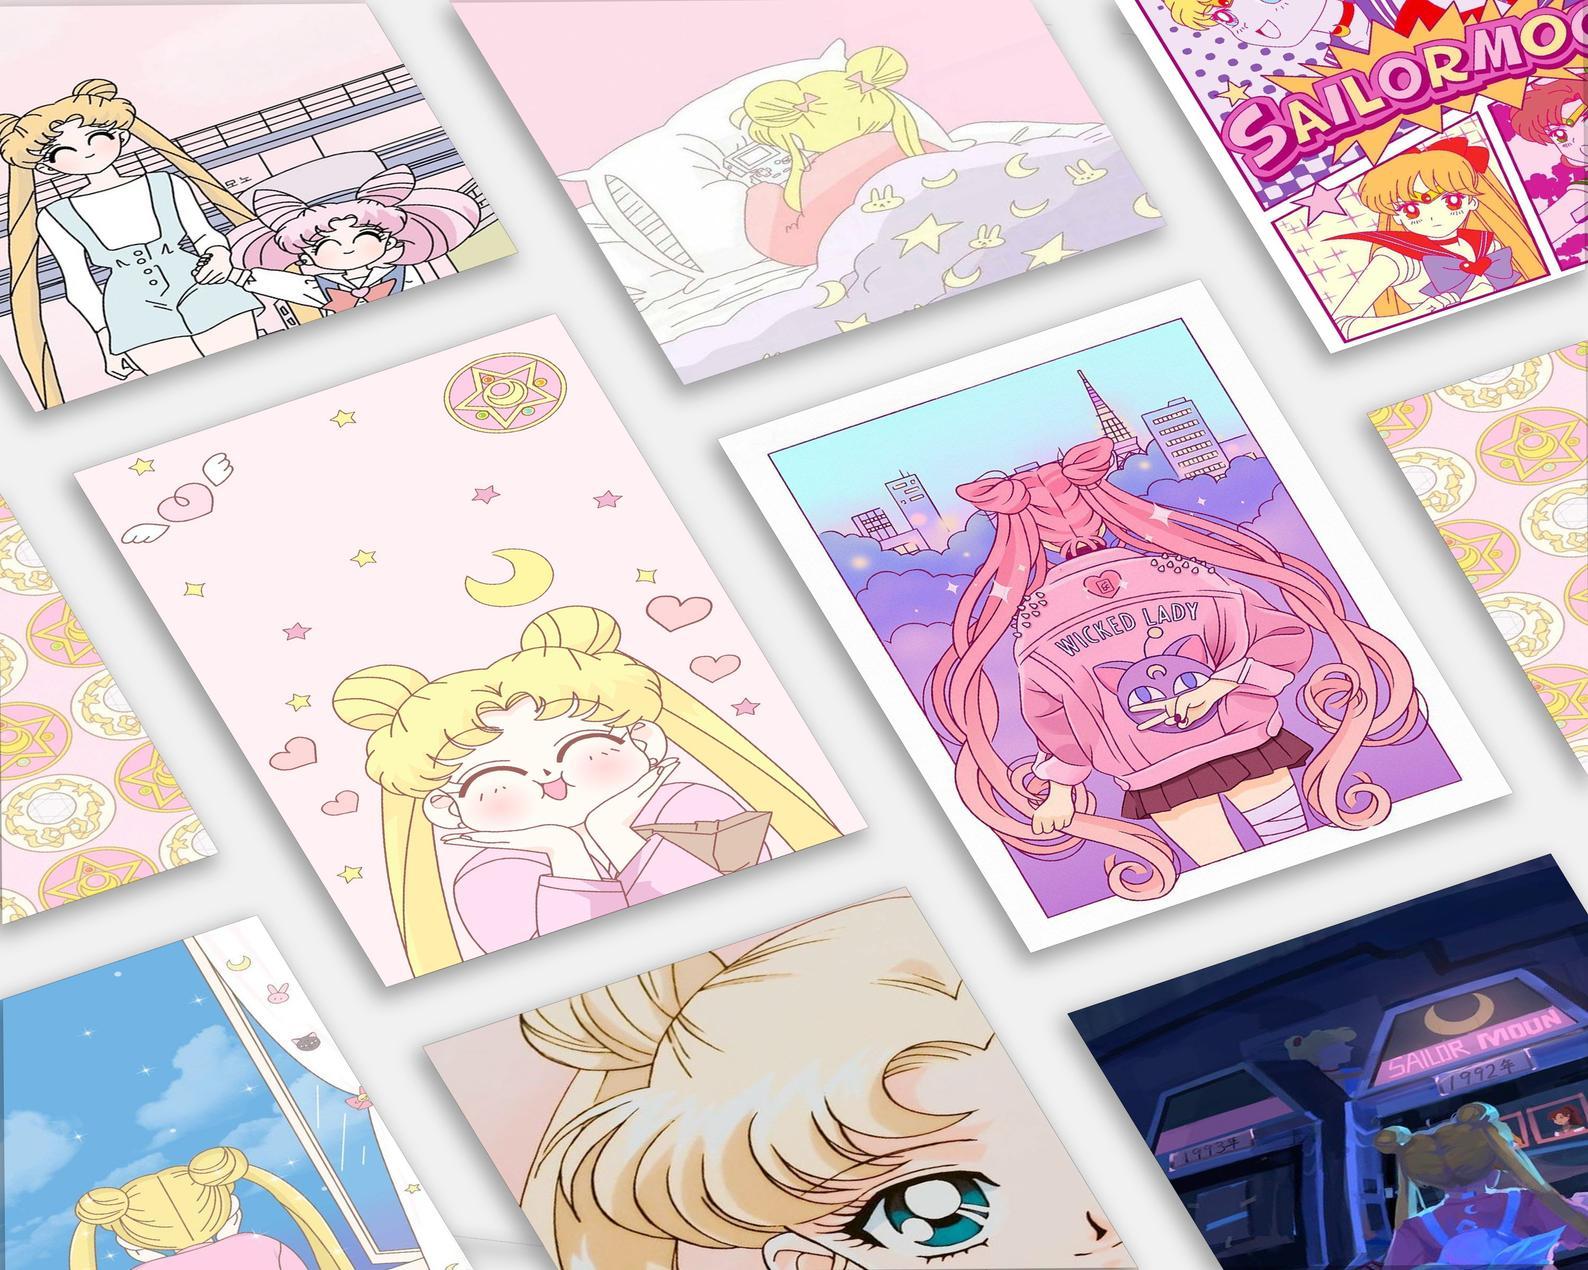 AnimeTown Poster Set Sailor Moon Anime Wall Collage 5" x 7" Home Goods - Anime Sailor Moon Poster Set